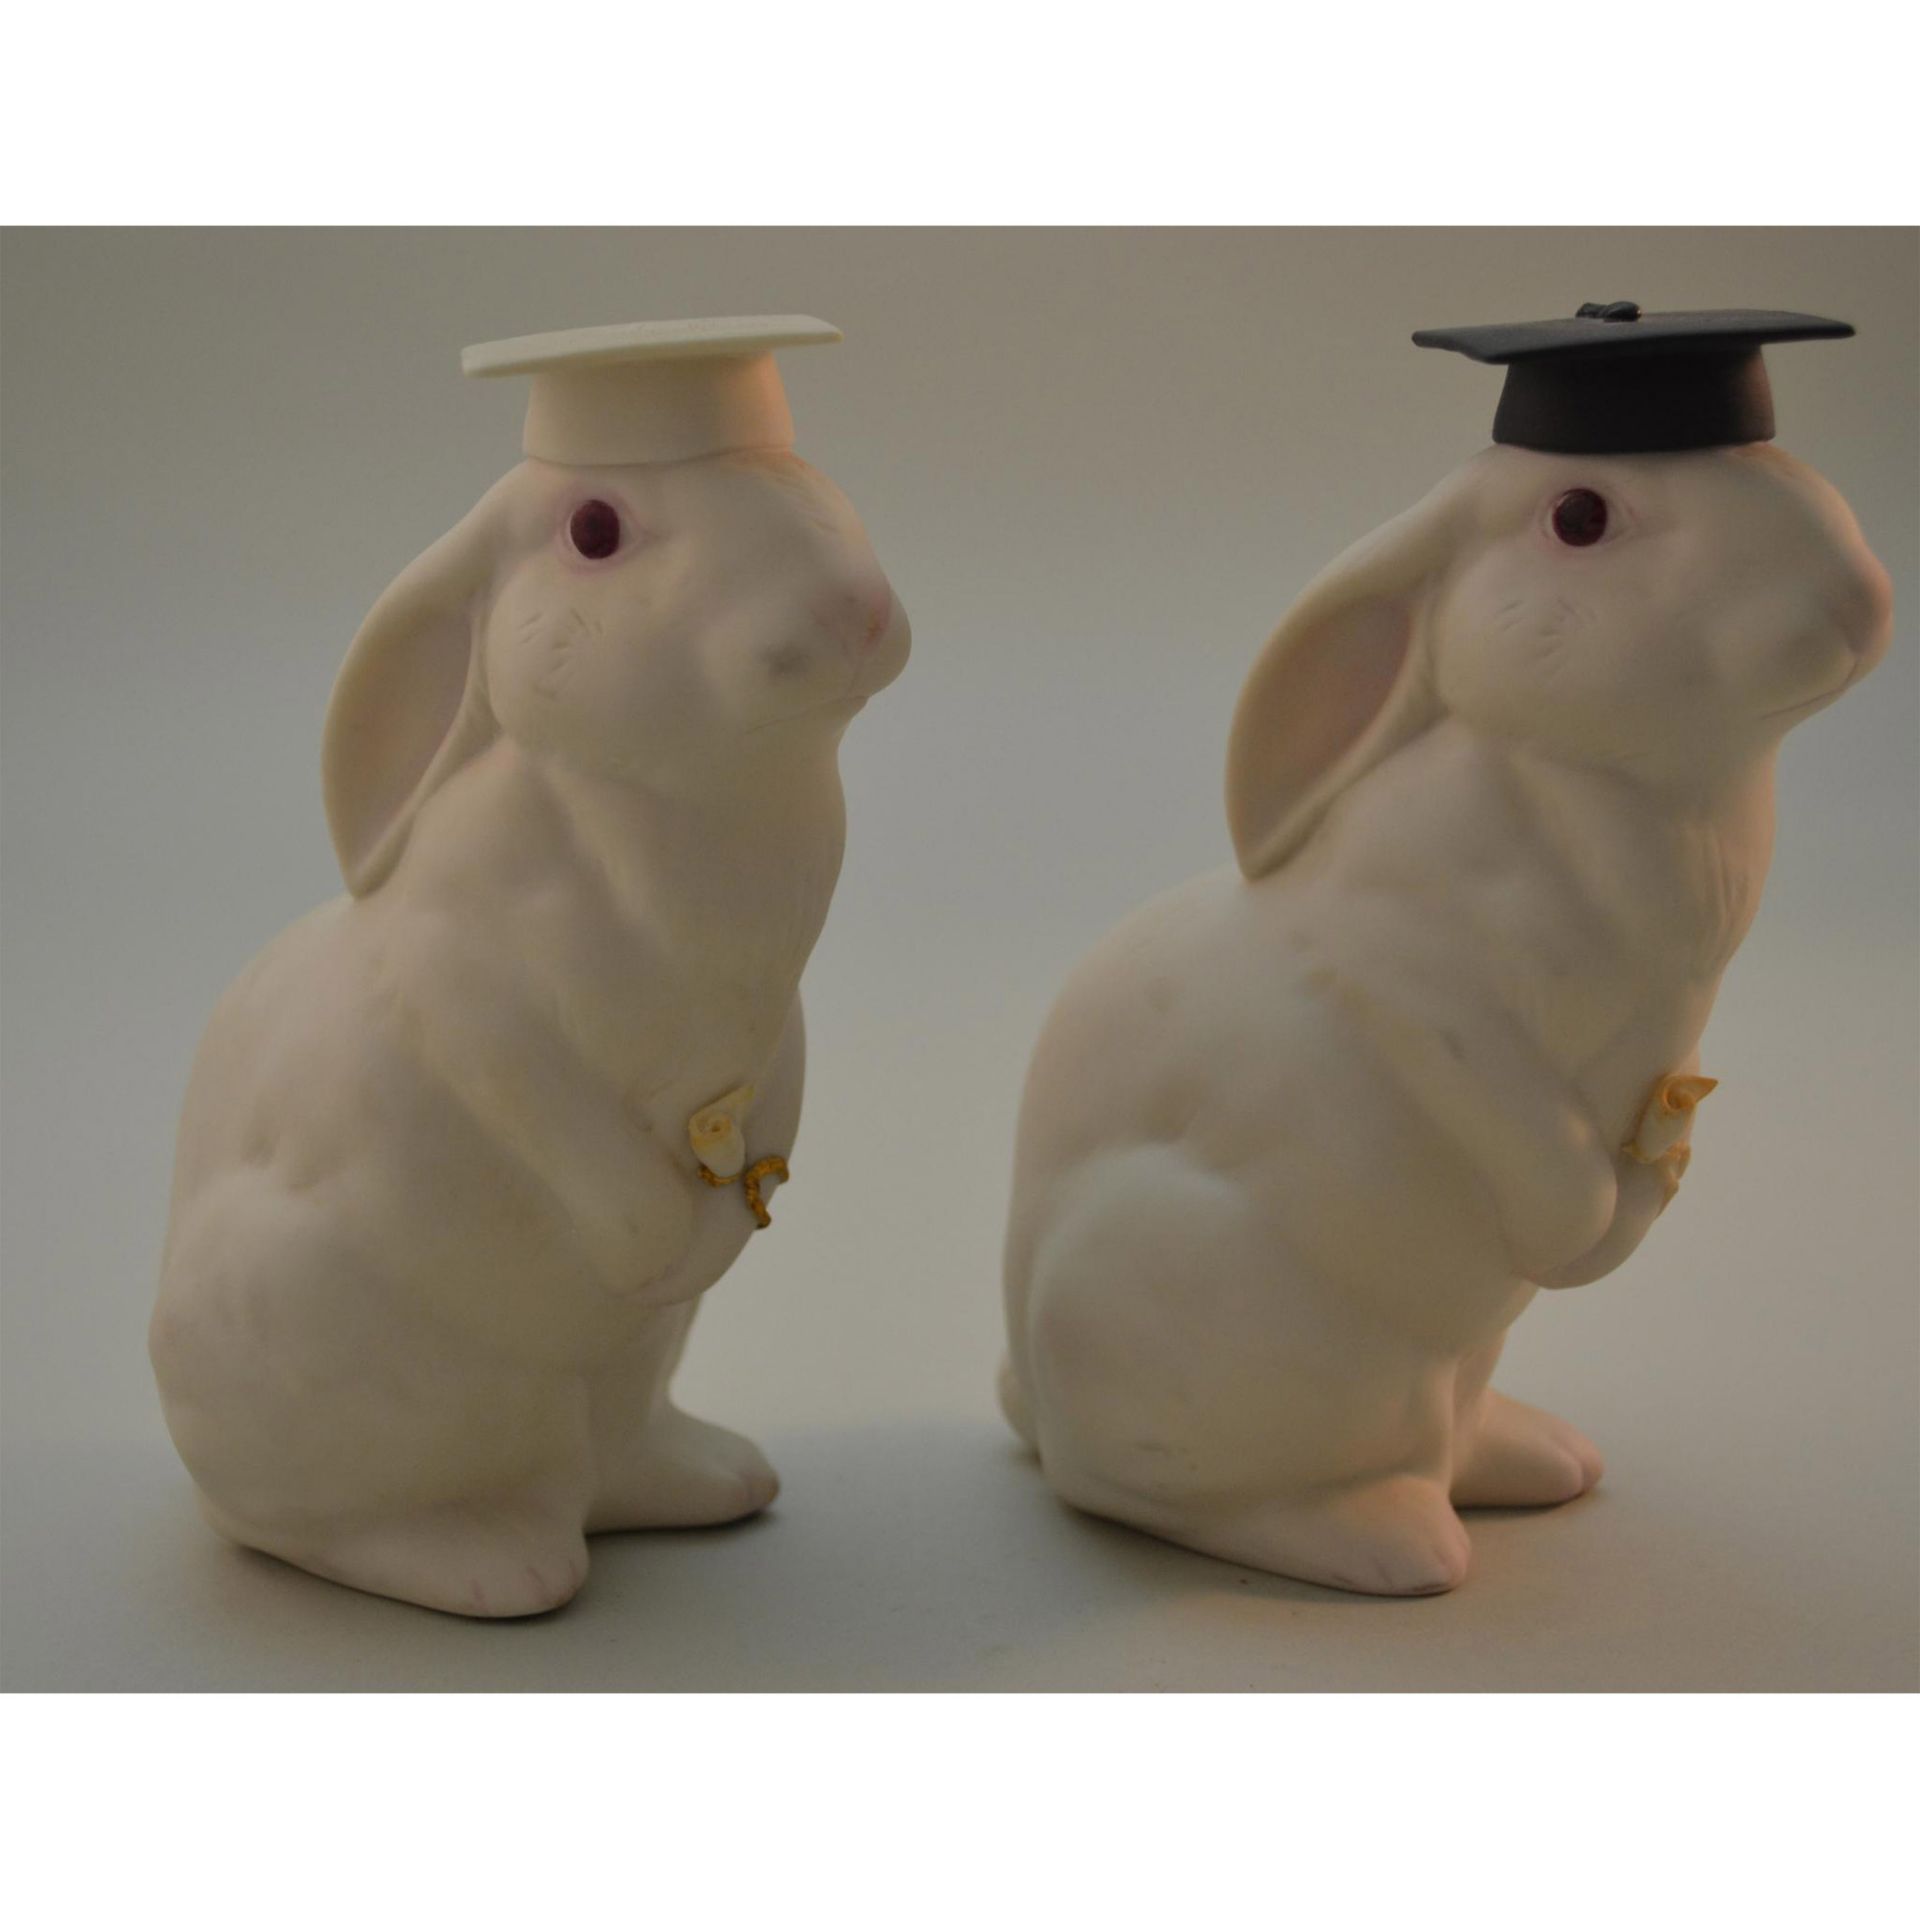 Cybis Porcelain Bunnies, The Graduates, Pair - Image 2 of 4